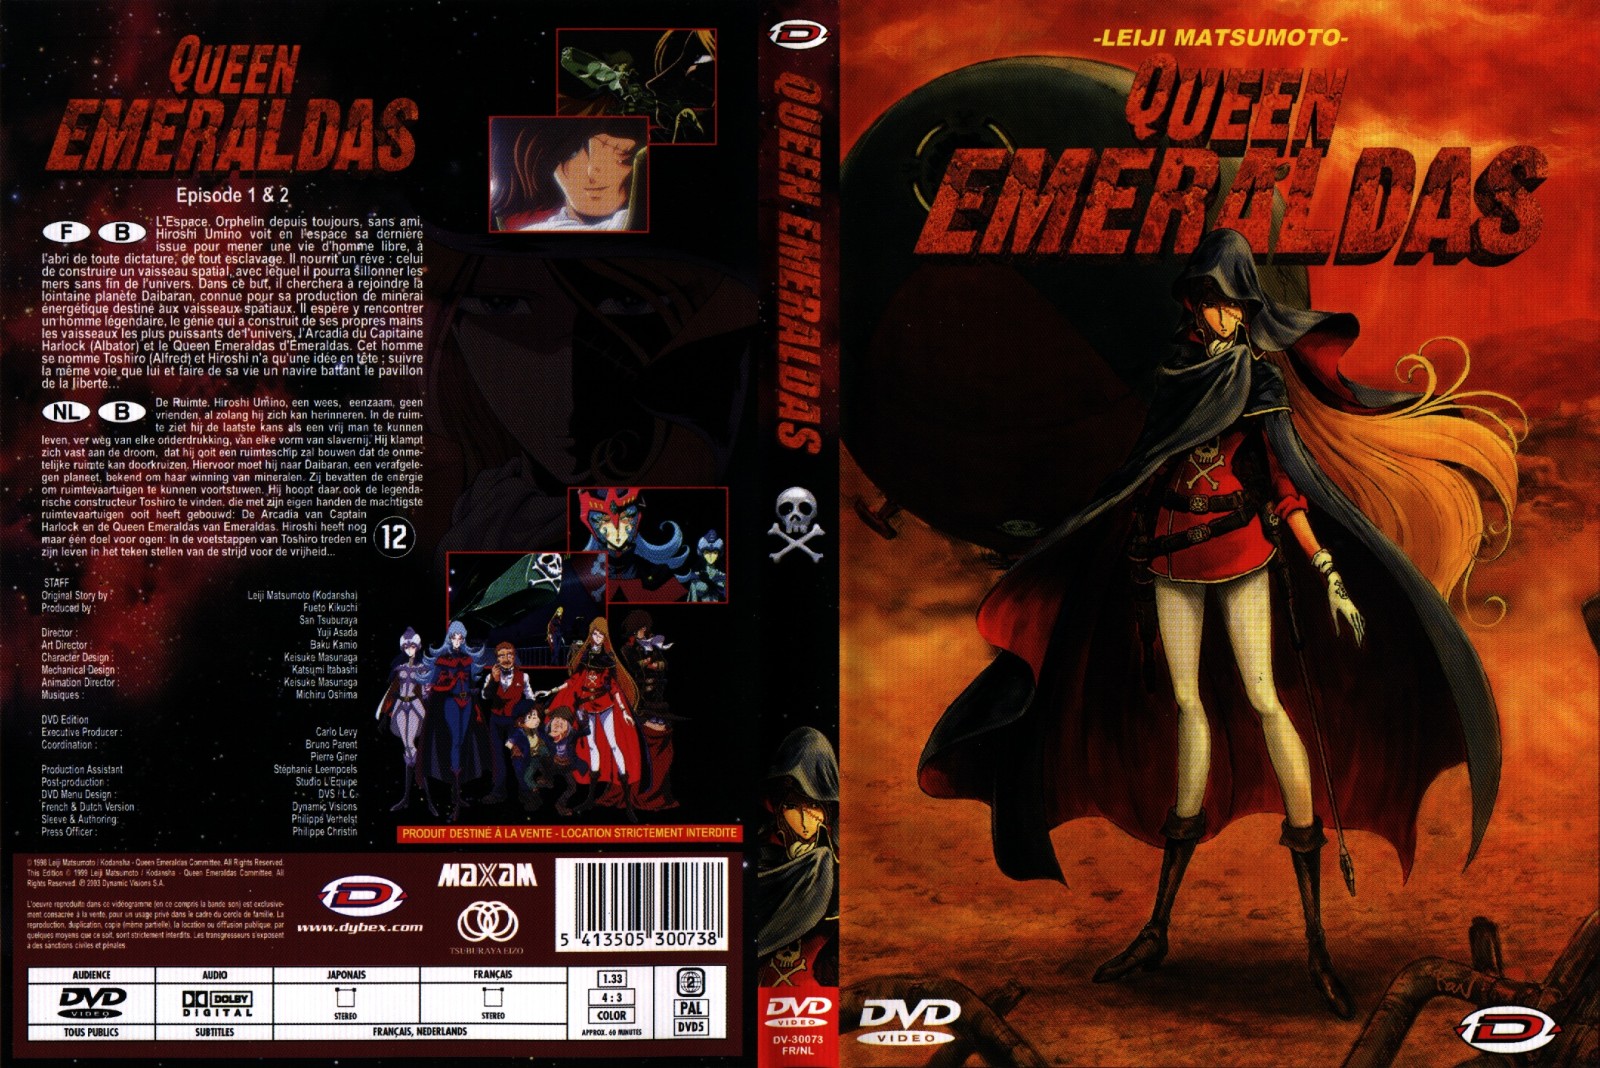 Jaquette DVD Queen emeraldas